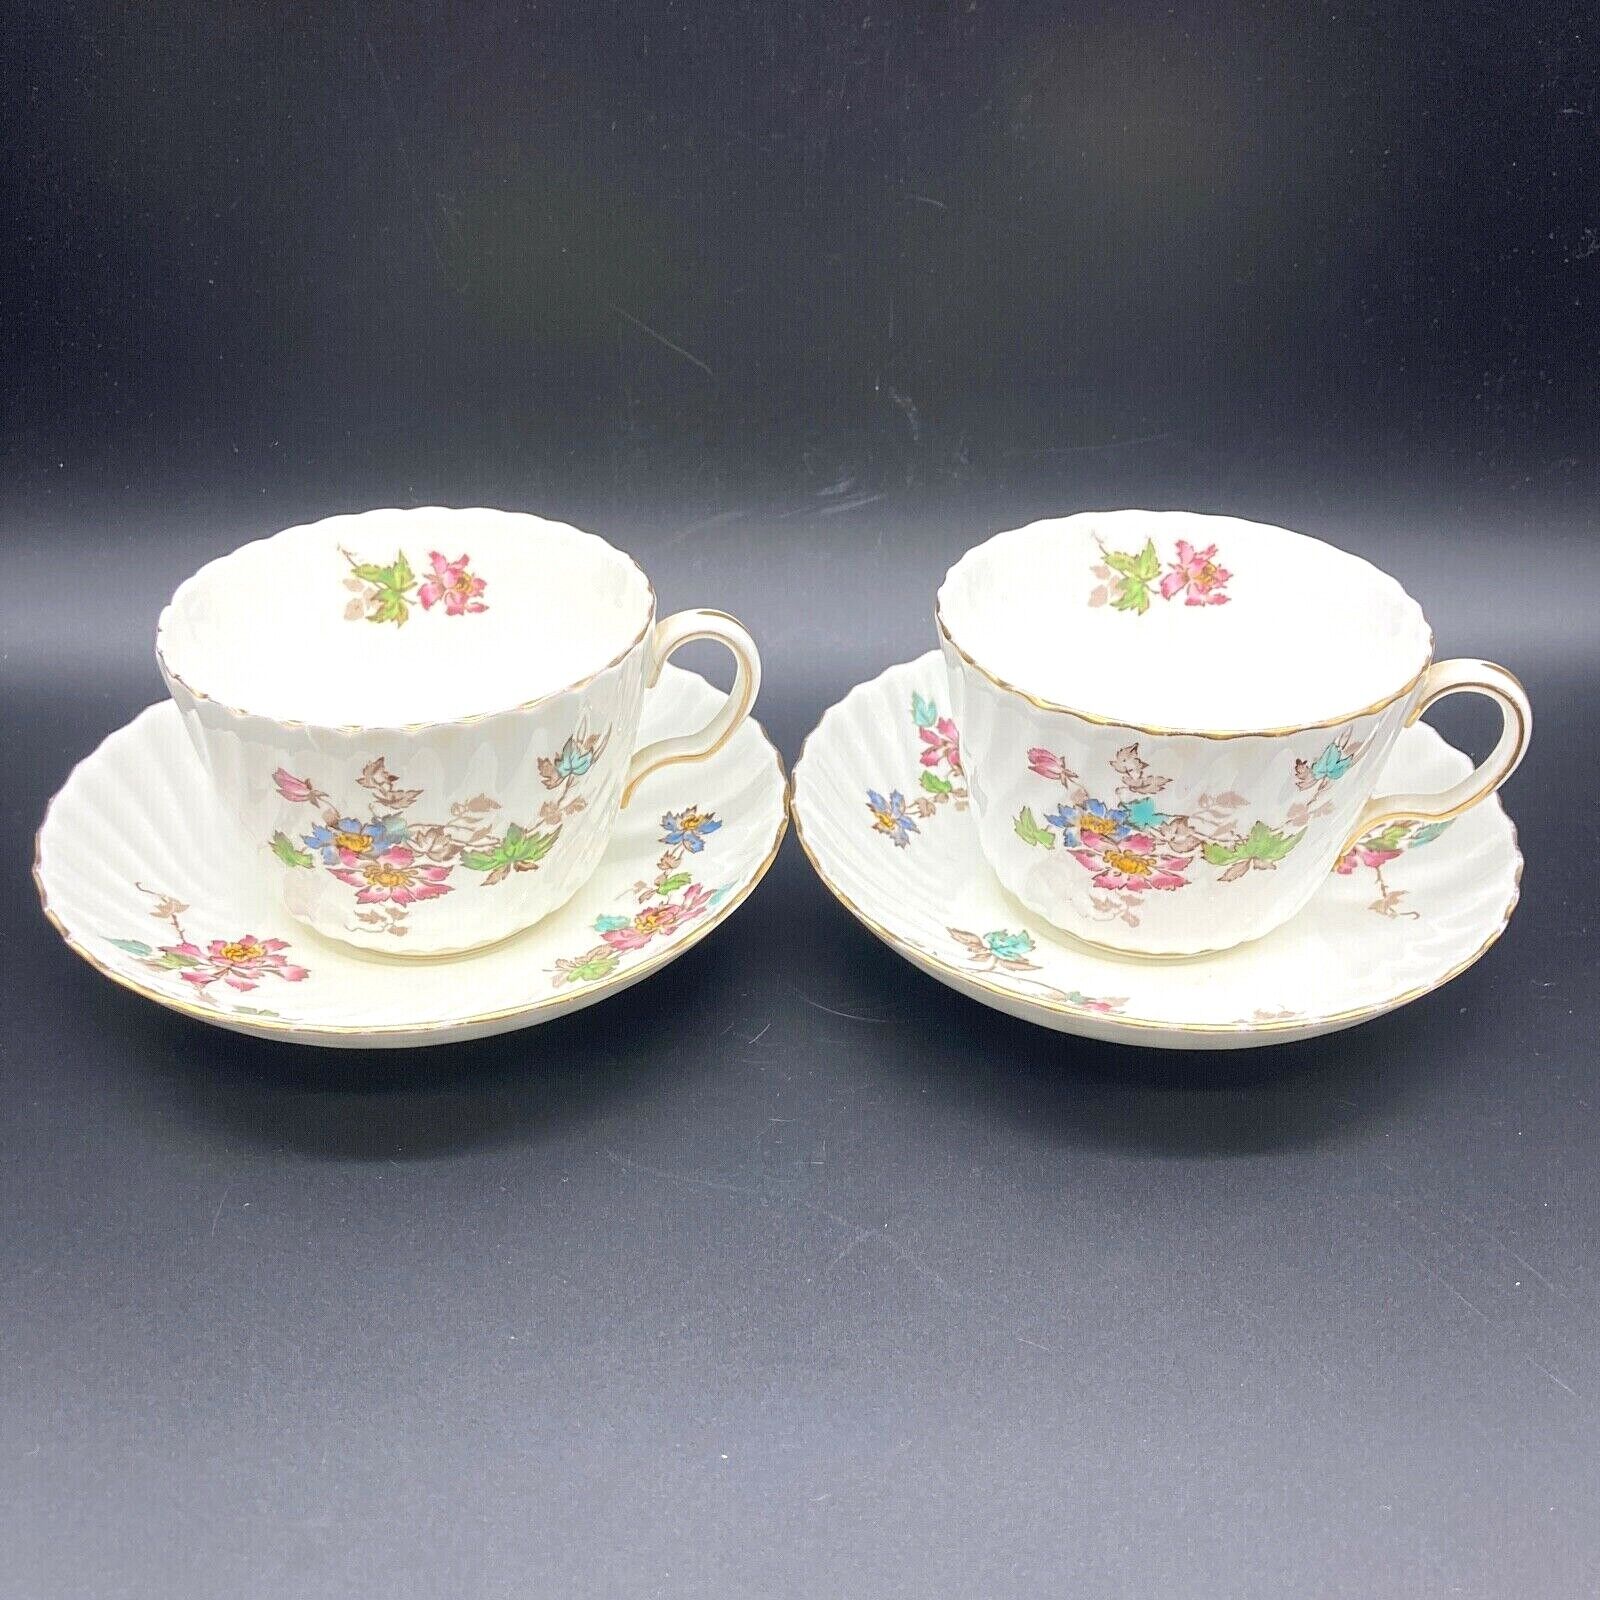 2 Antique Vintage Minton Vermont Round Swirl Flat Tea Cup & Saucer Set Floral 